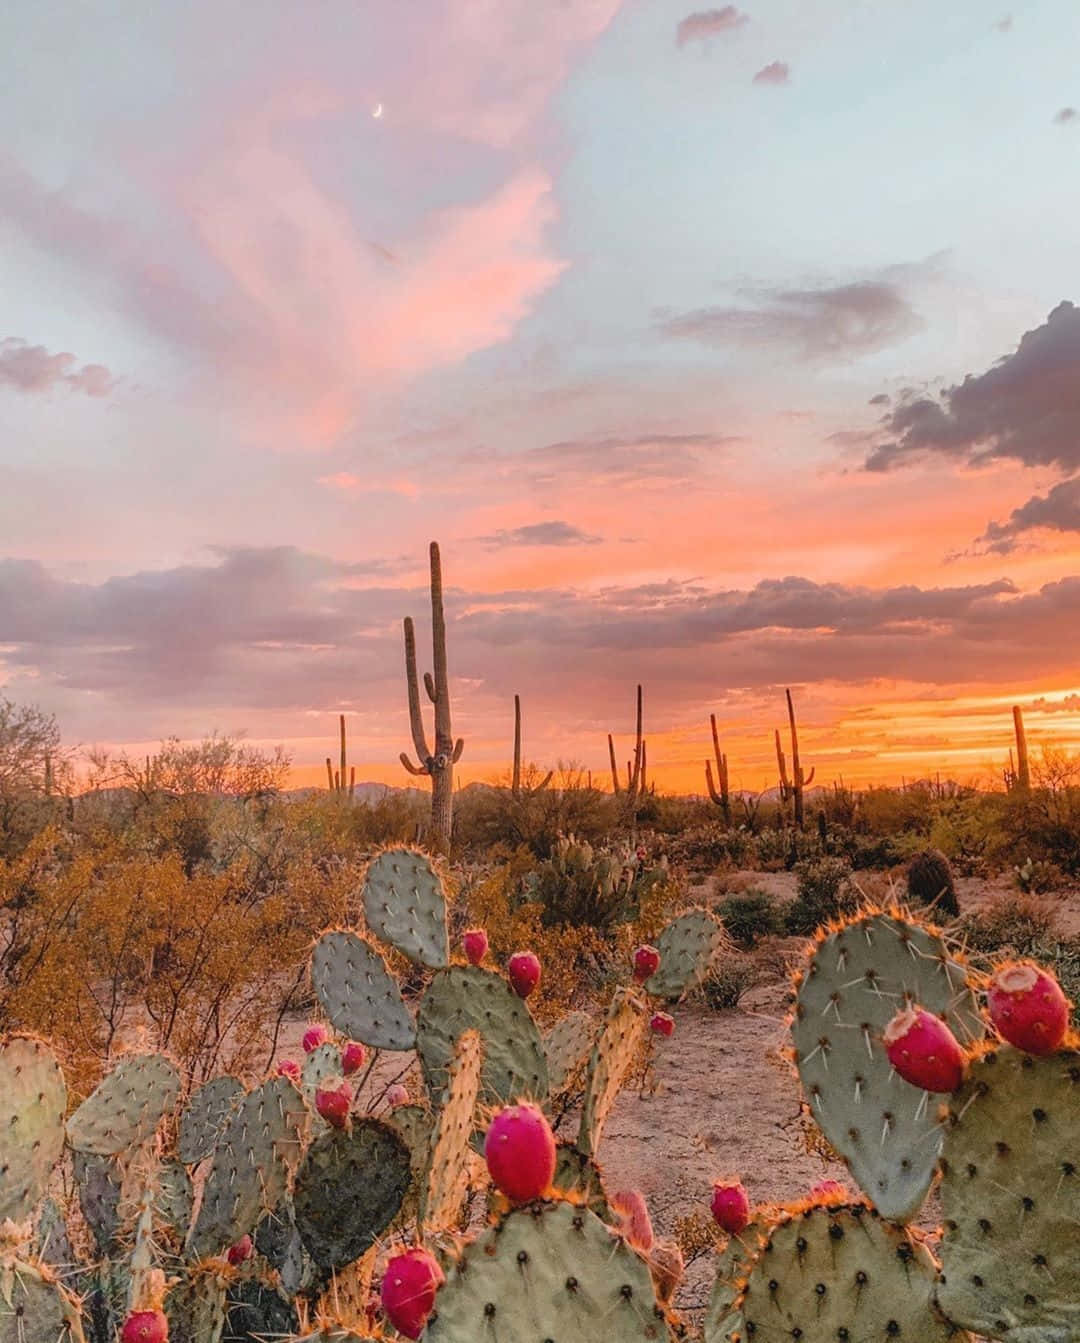 Desert Sunset Cactus Landscape.jpg Wallpaper